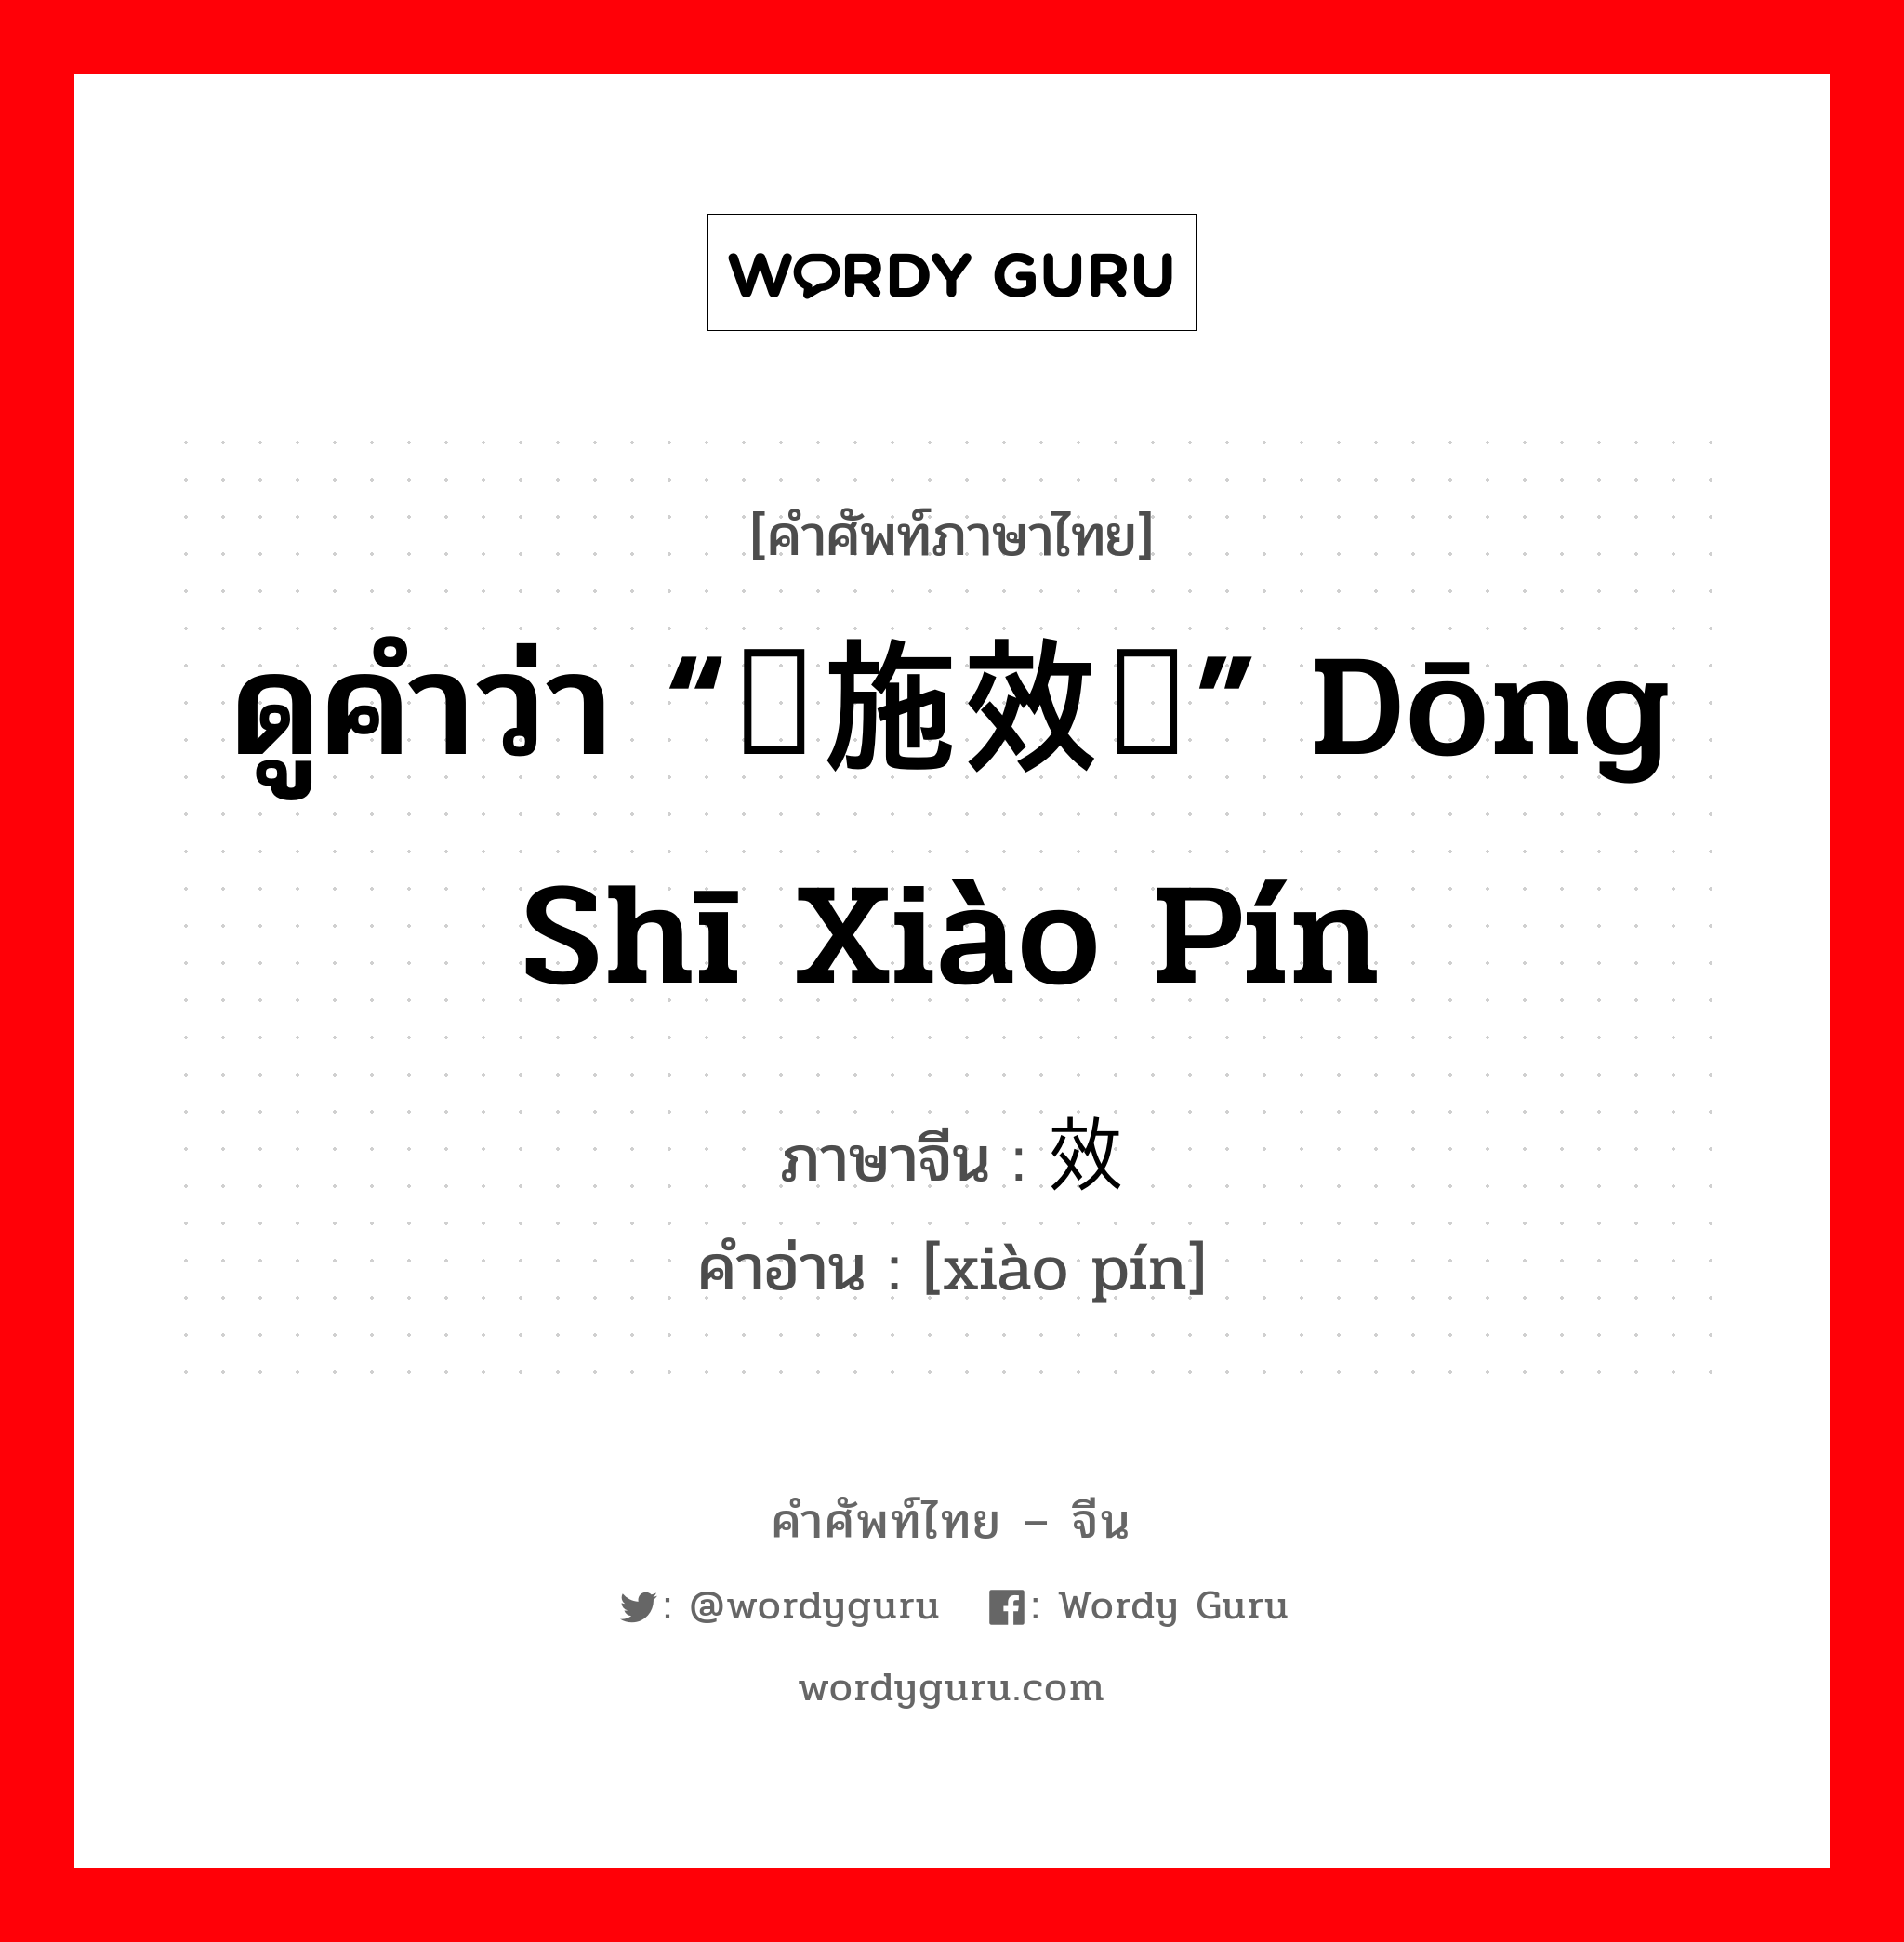 ดูคำว่า “东施效颦” dōng shī xiào pín ภาษาจีนคืออะไร, คำศัพท์ภาษาไทย - จีน ดูคำว่า “东施效颦” dōng shī xiào pín ภาษาจีน 效颦 คำอ่าน [xiào pín]